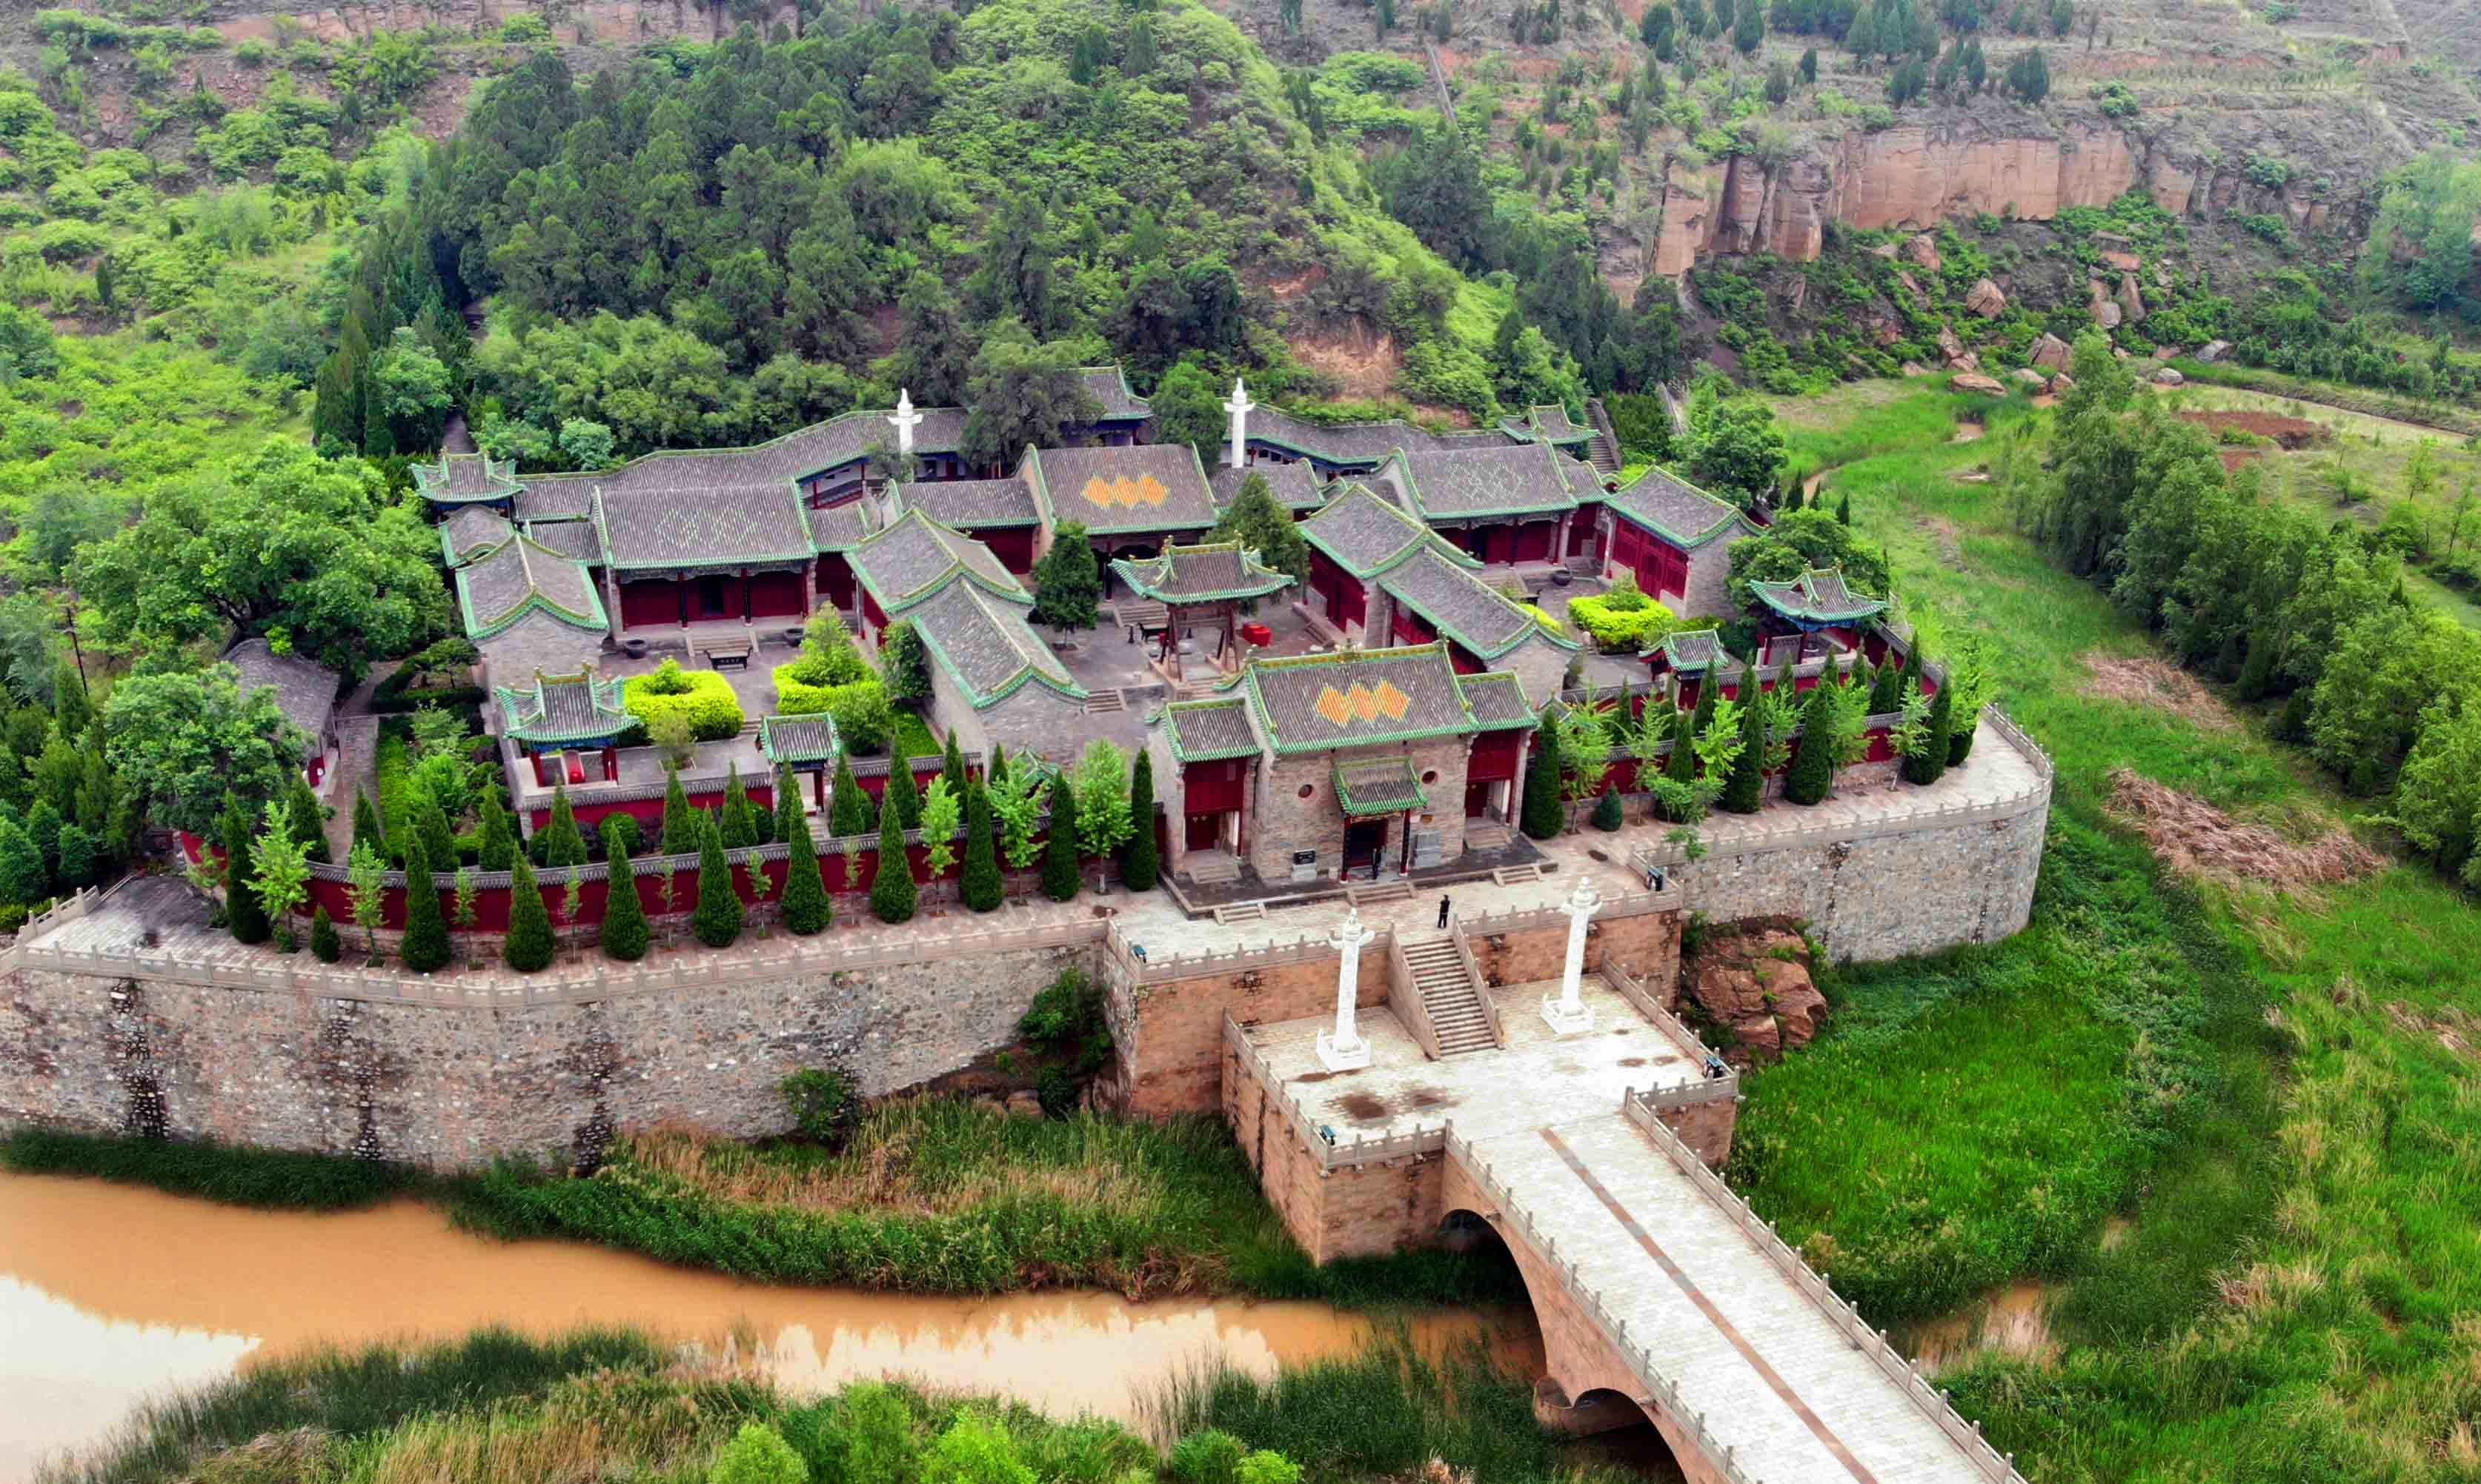 山西省临汾市尧都区有一座尧陵,位于临汾市东北35公里郭村的西侧,这里